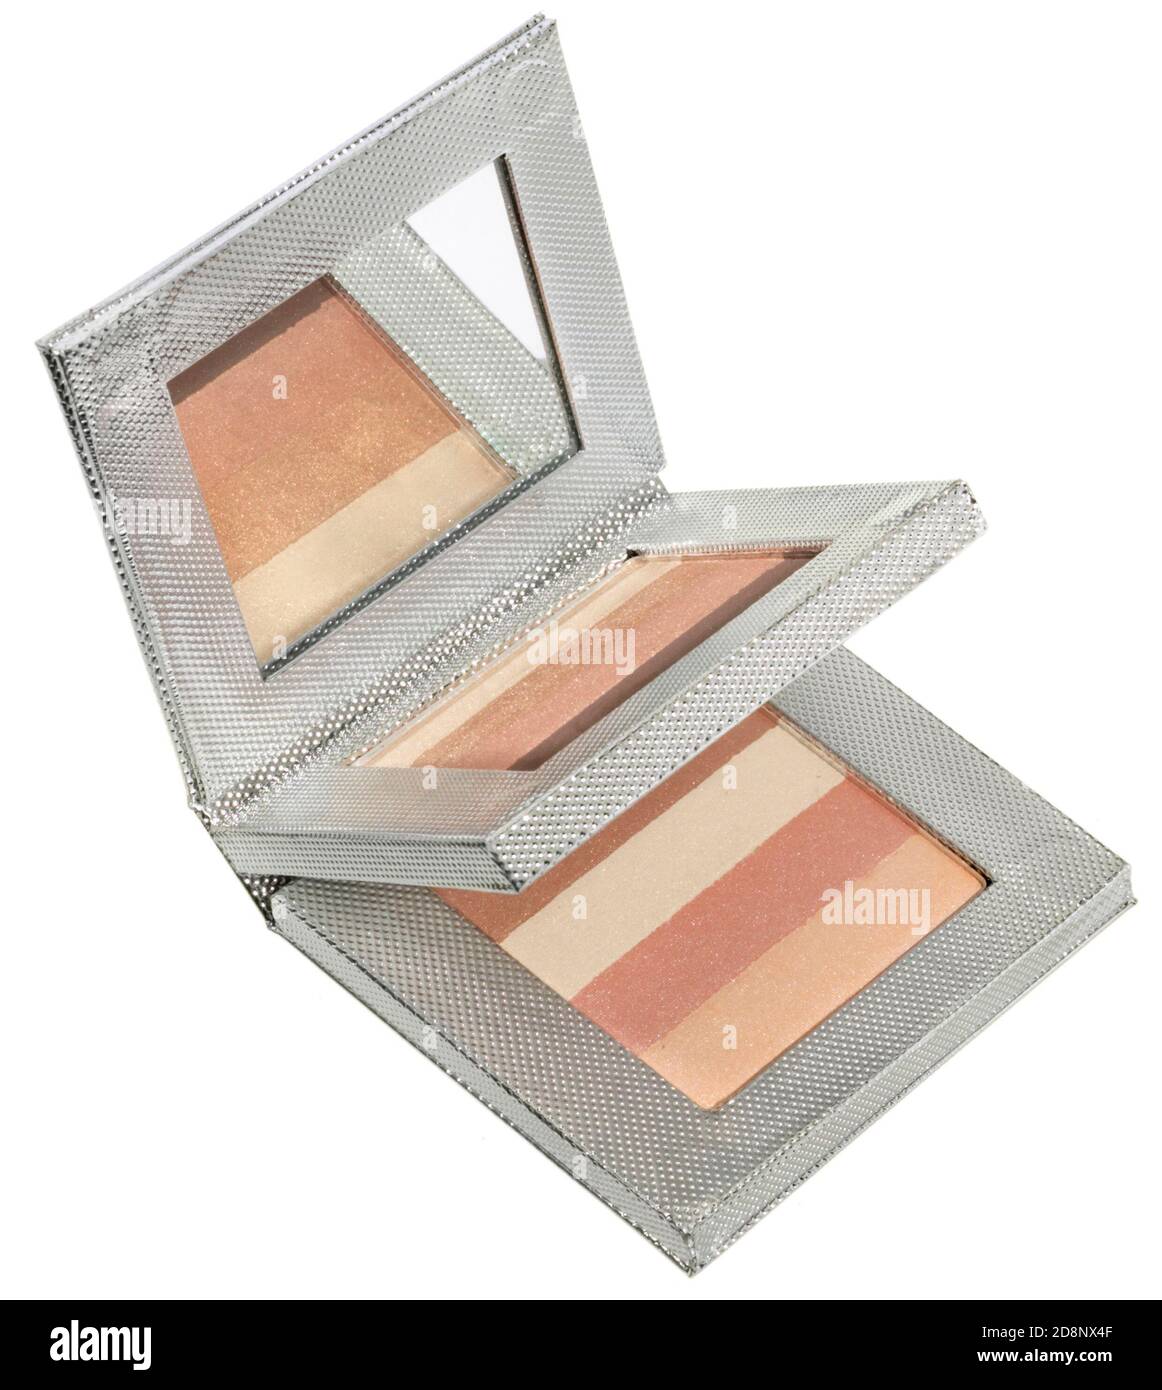 Smashbox doppia arrossamento e bronzatore compatto con specchio fotografato uno sfondo bianco Foto Stock